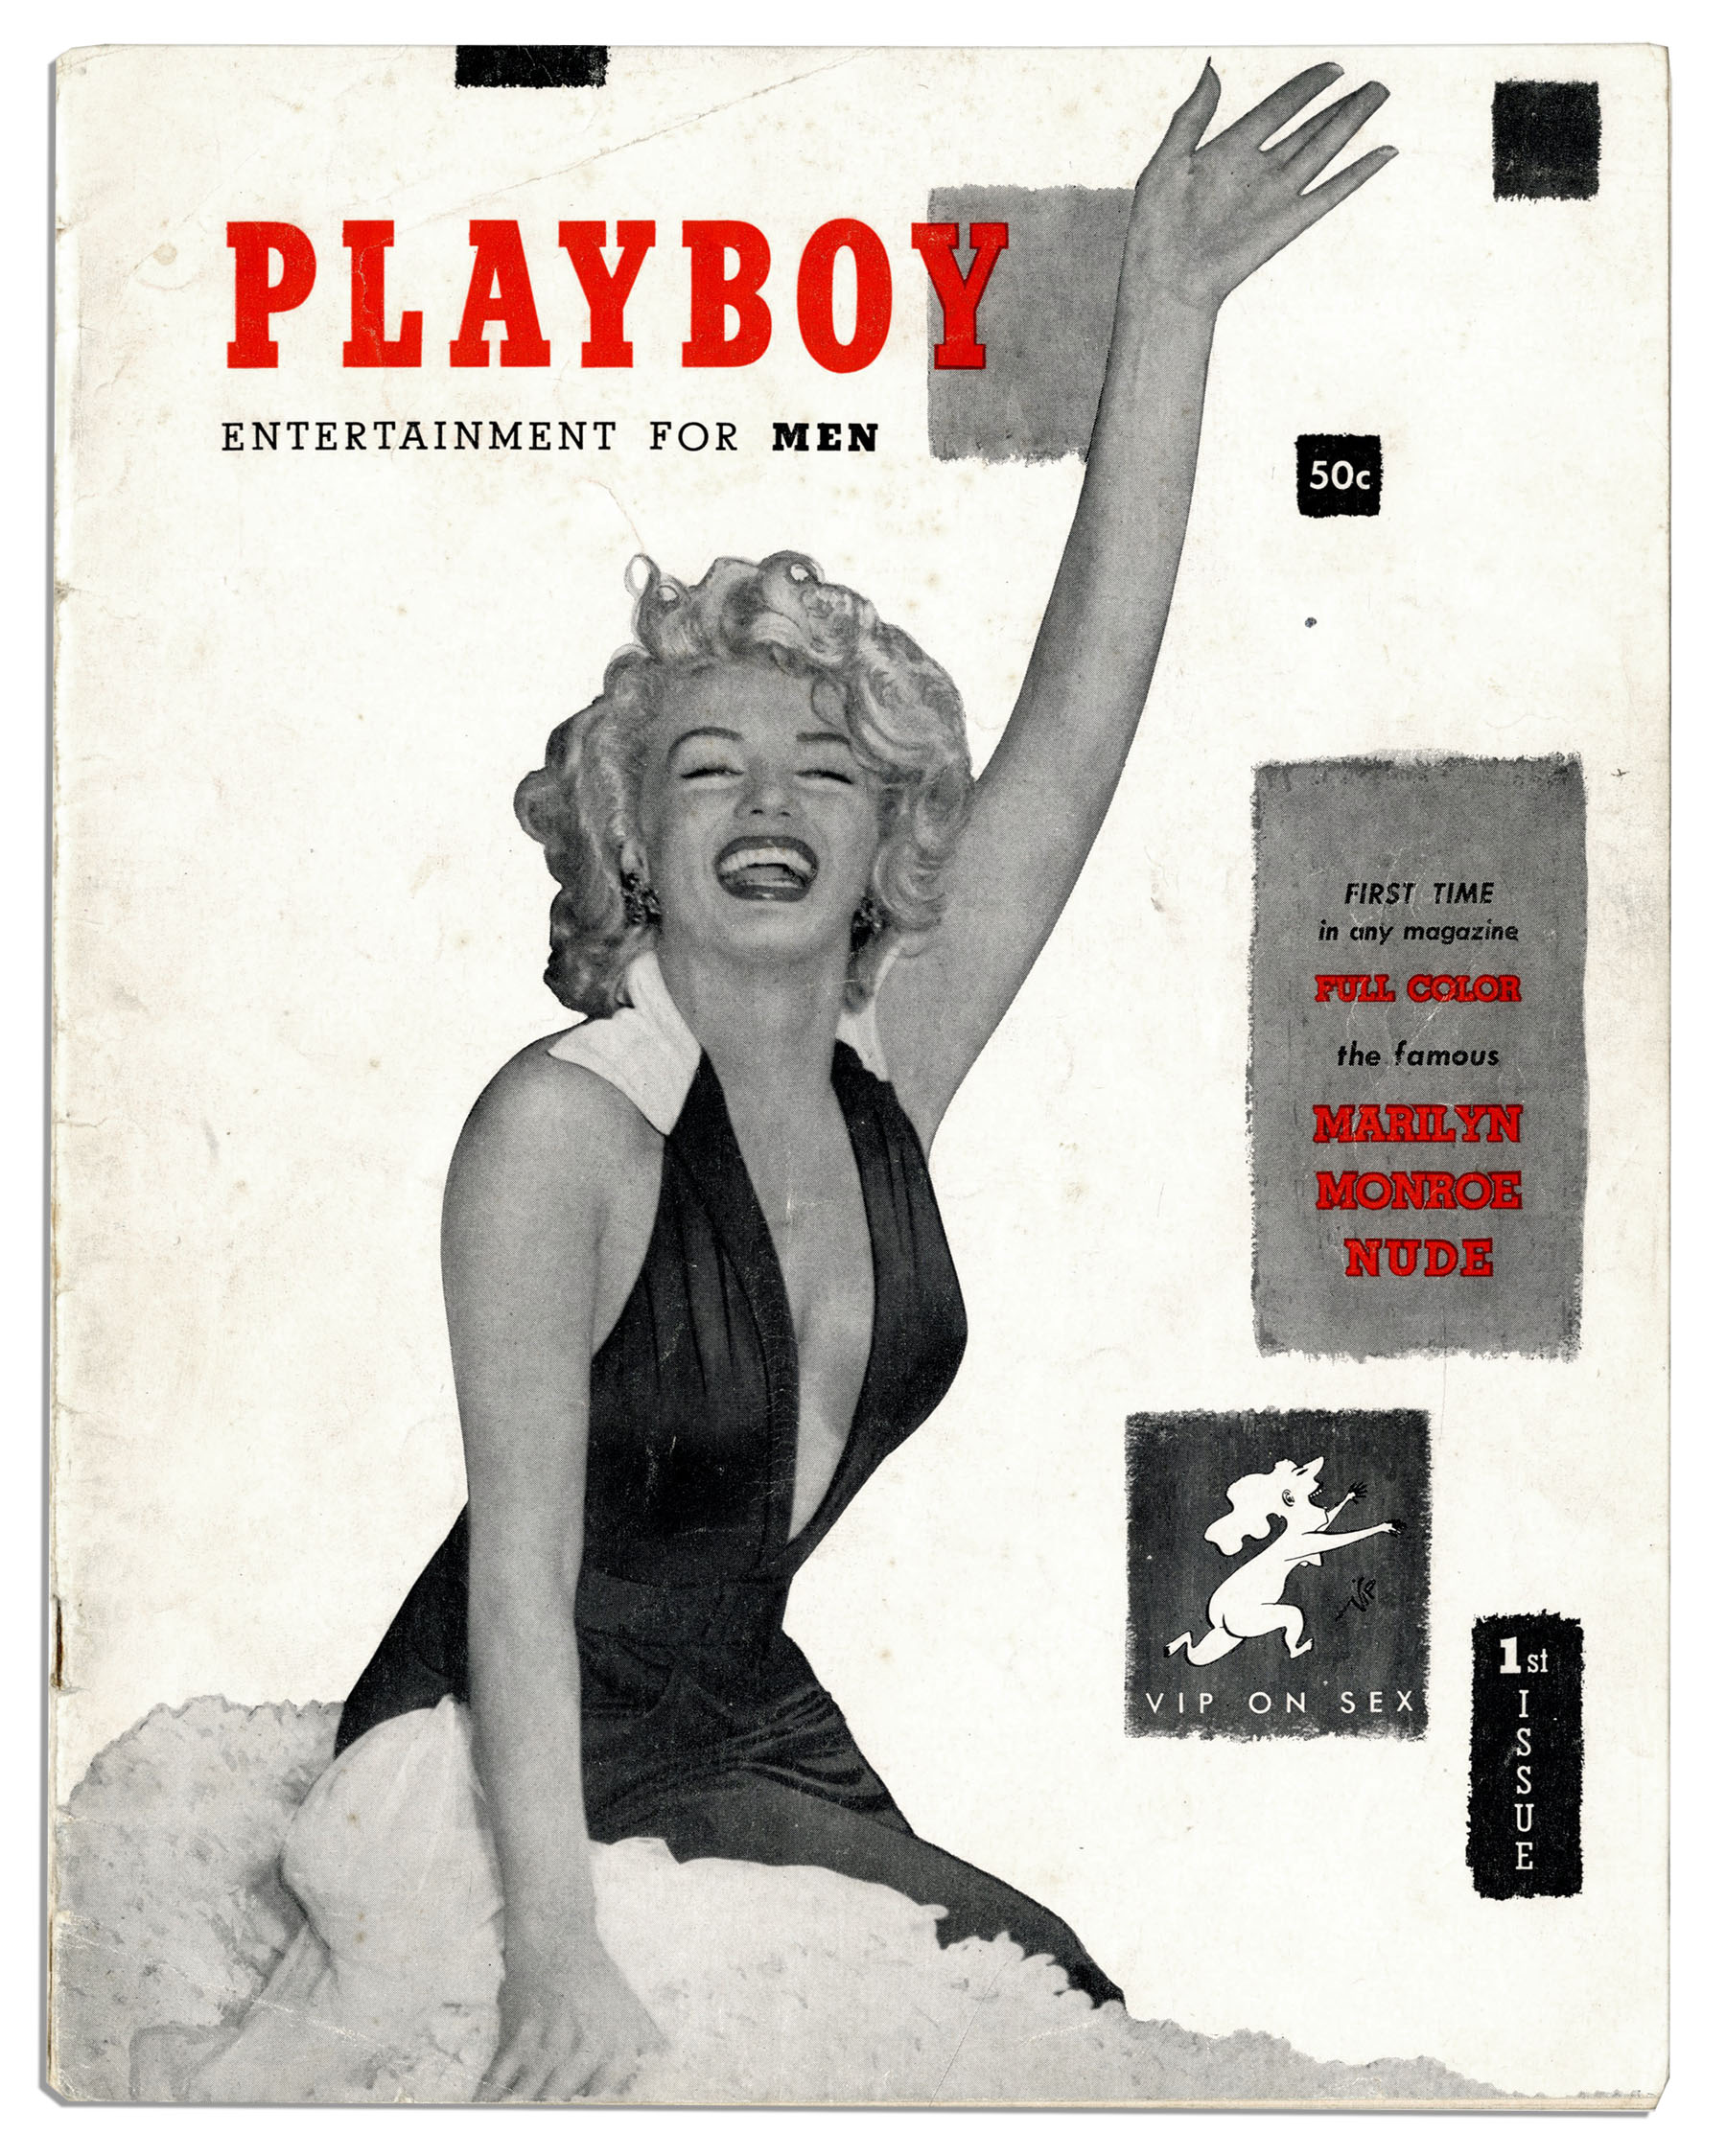 'Playboy' americana desiste de publicar nudez por causa da internet